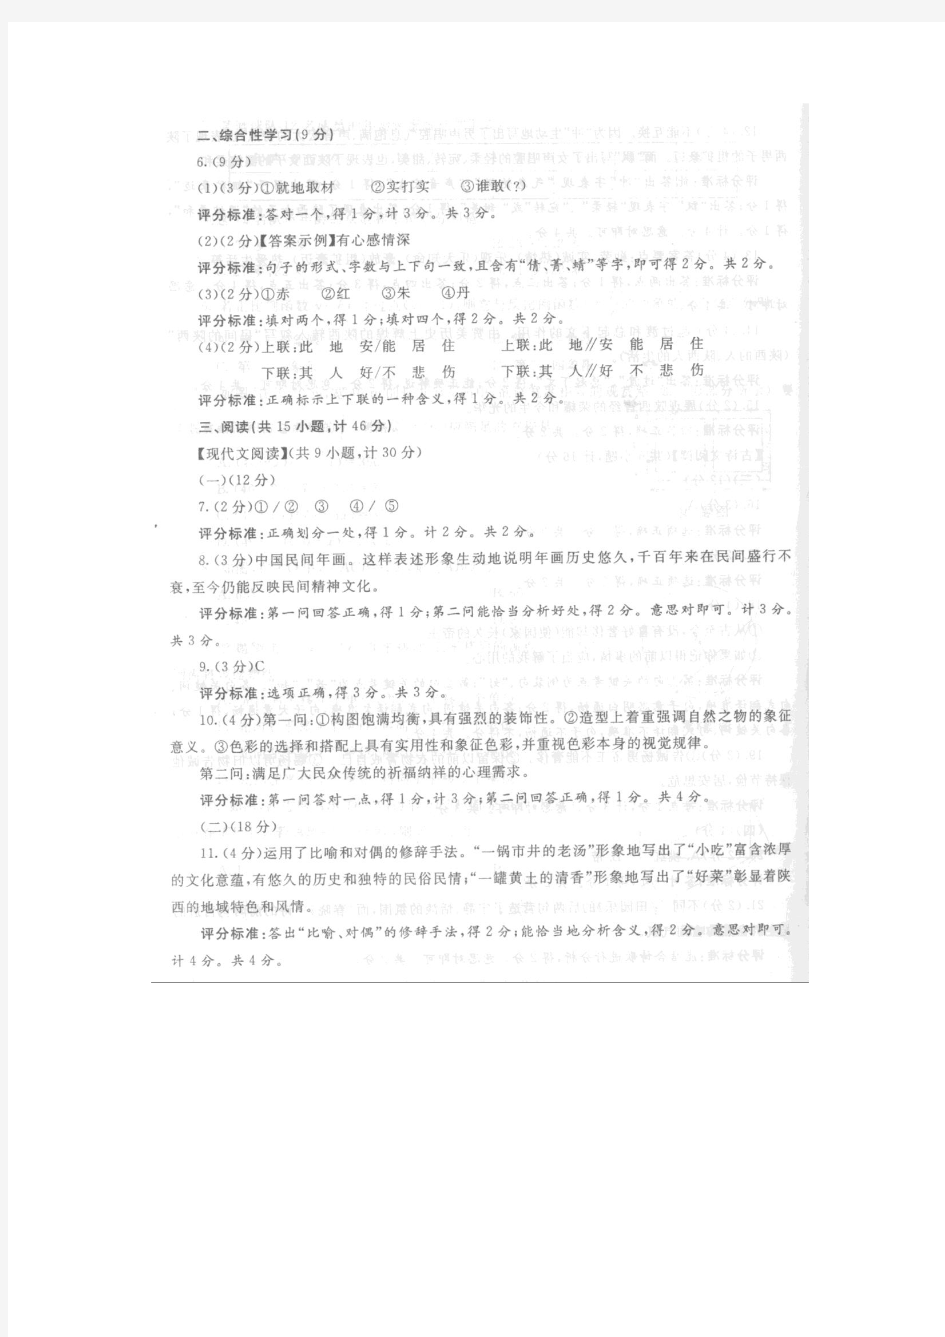 2009年陕西中考语文副题及参考答案『九年级语文教师必备』